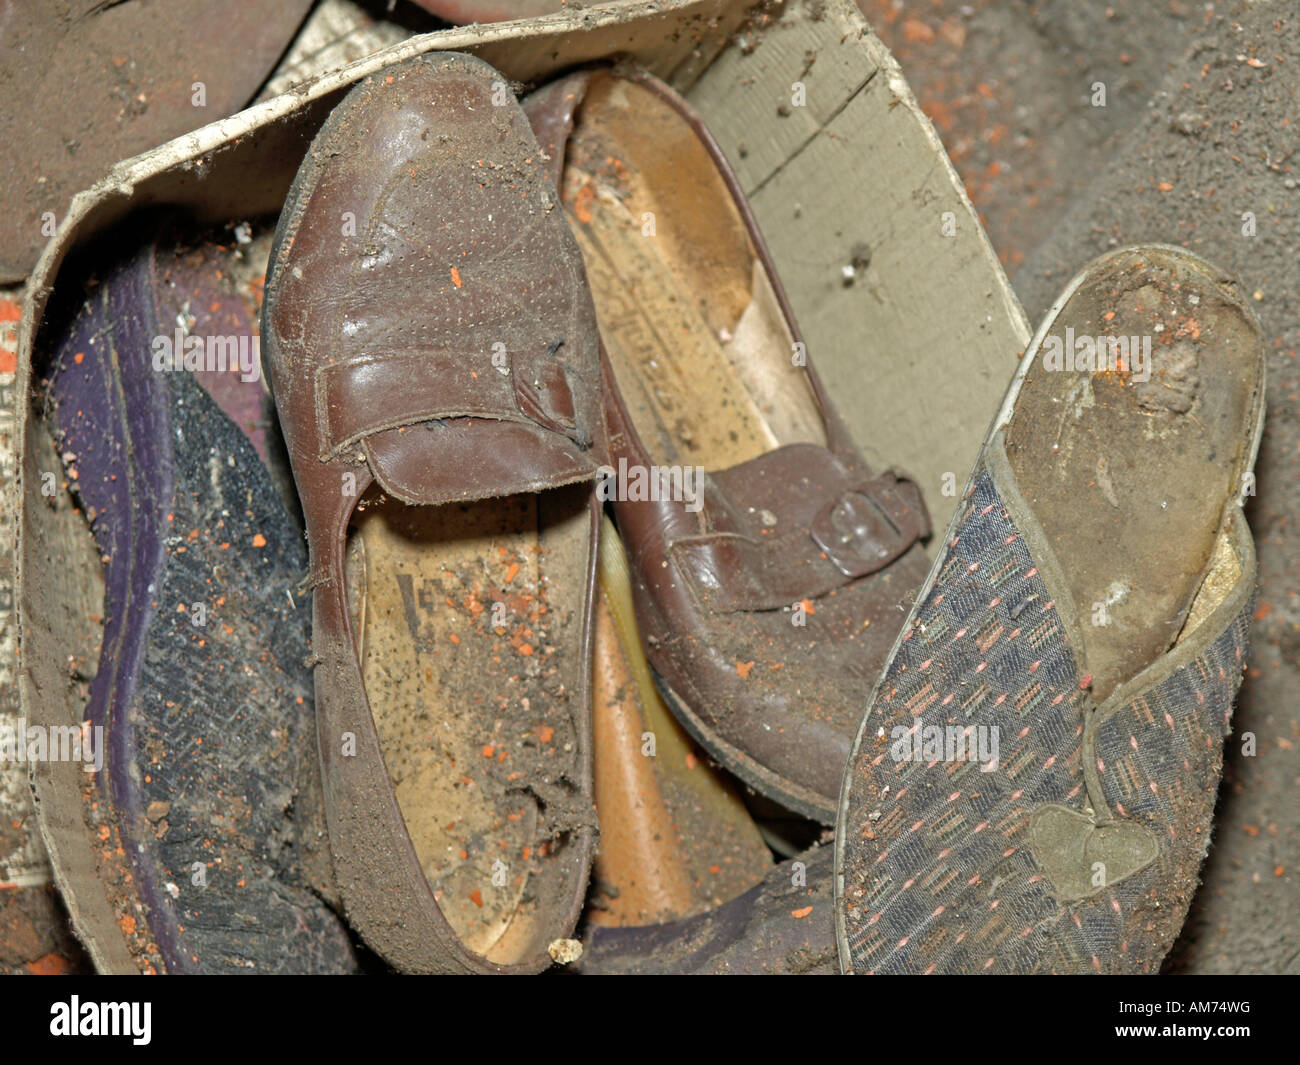 Pantofola rotta immagini e fotografie stock ad alta risoluzione - Alamy